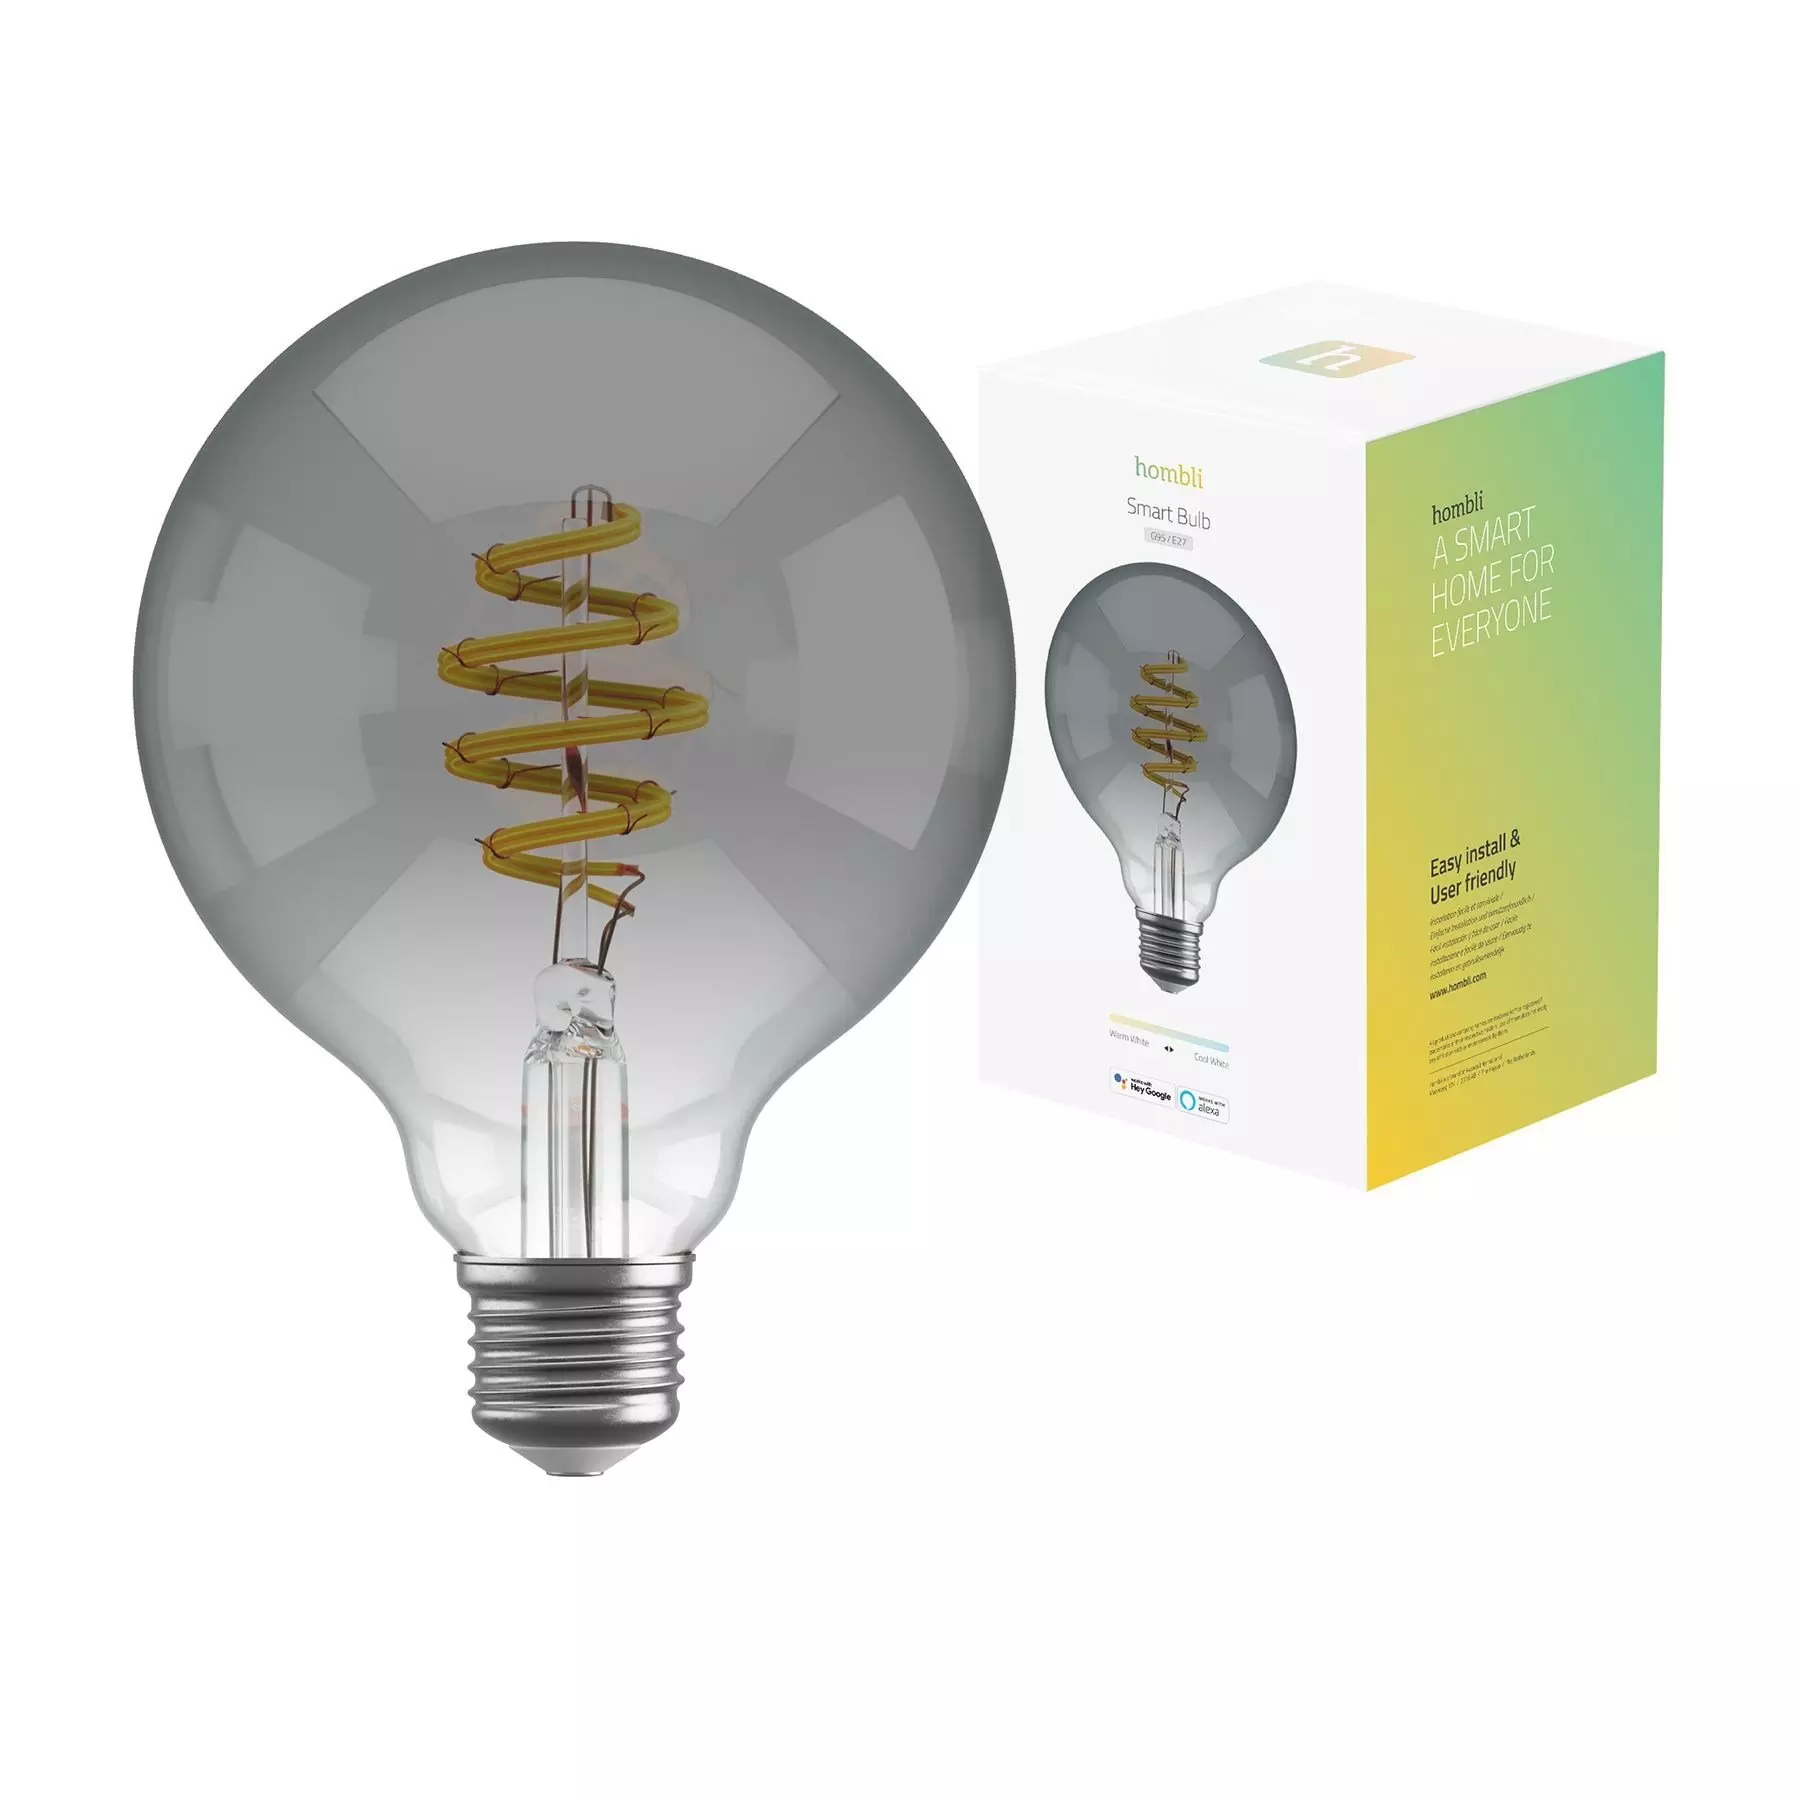 Hombli Smart Bulb G95 Cct Filament